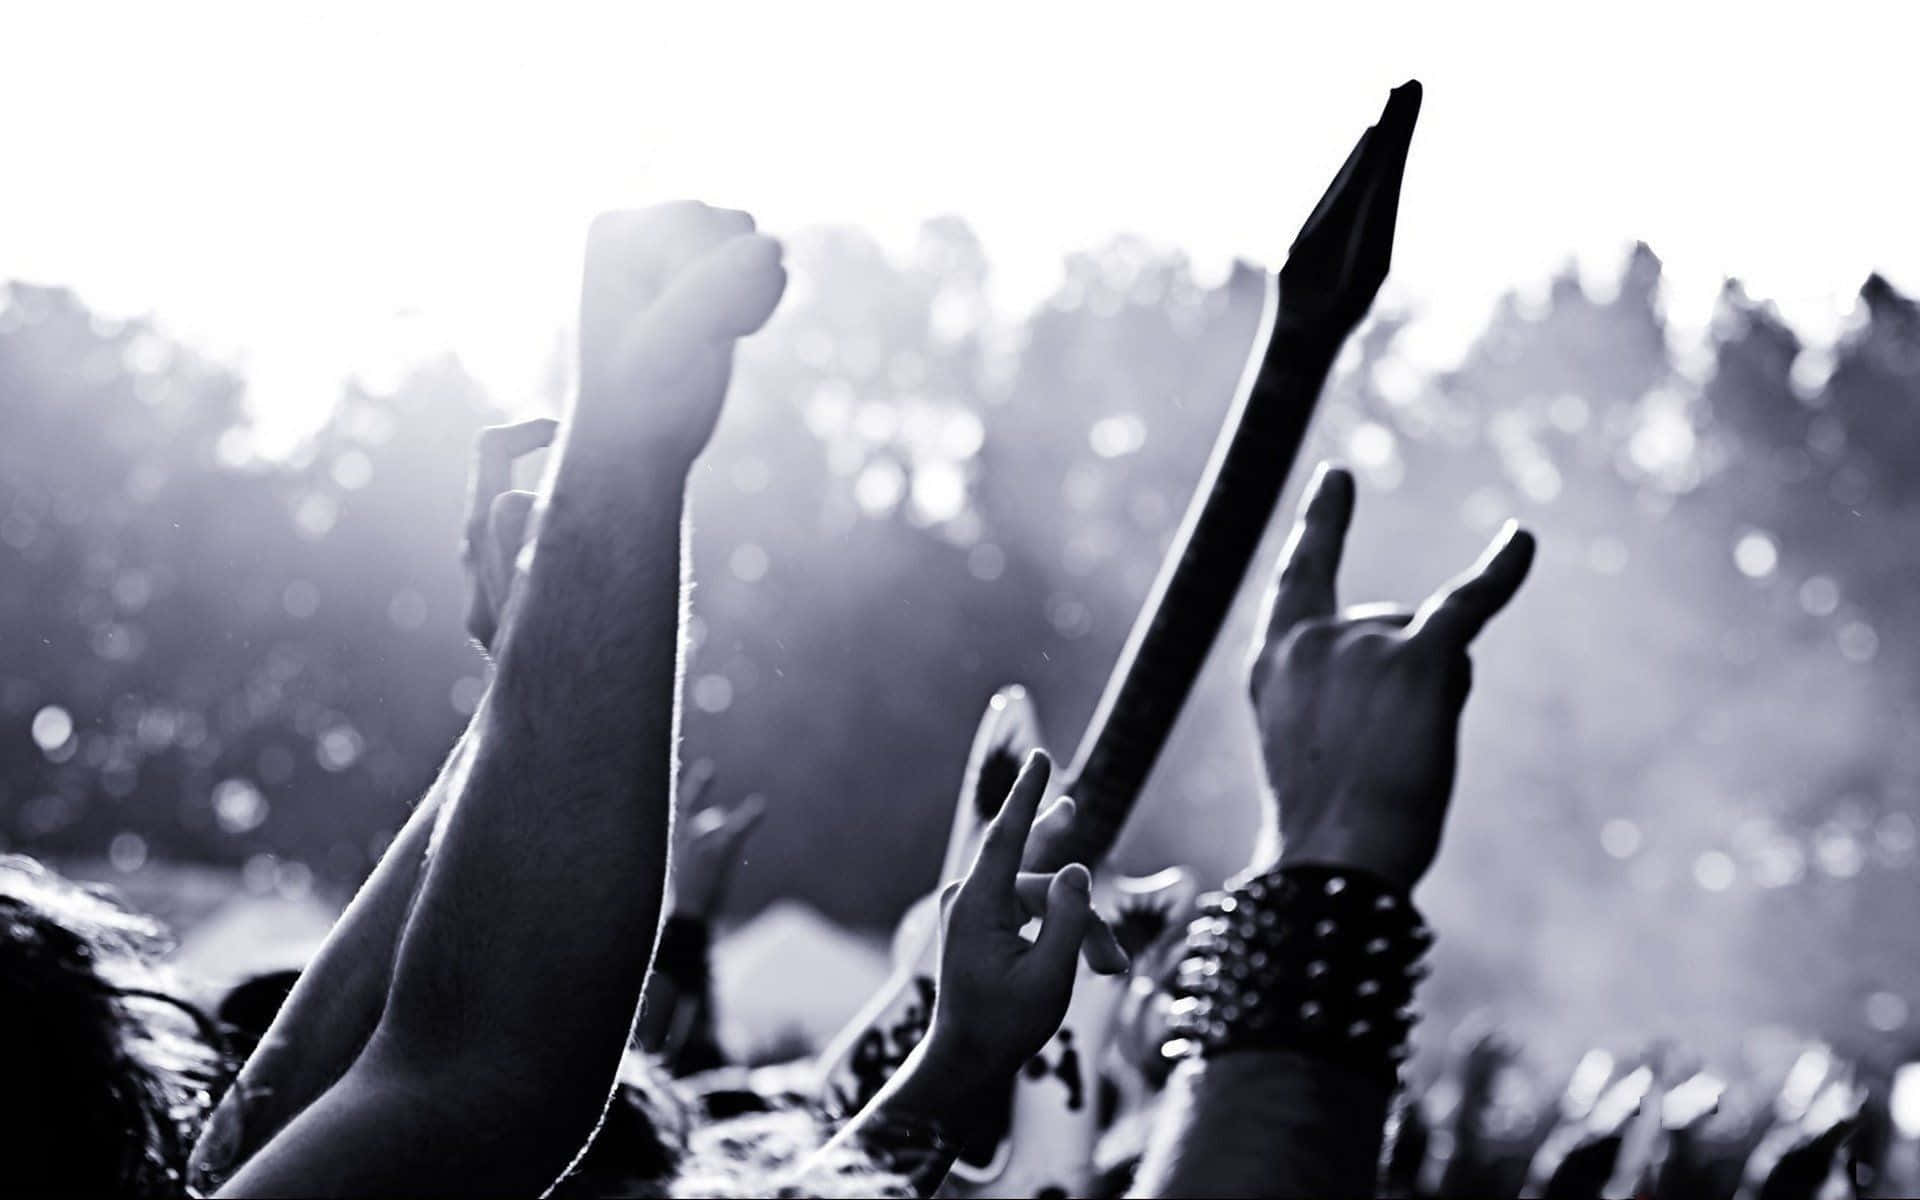 Losentusiastas De La Música Metal Se Unen Para Crear Un Sonido Fuerte Y Poderoso Fondo de pantalla